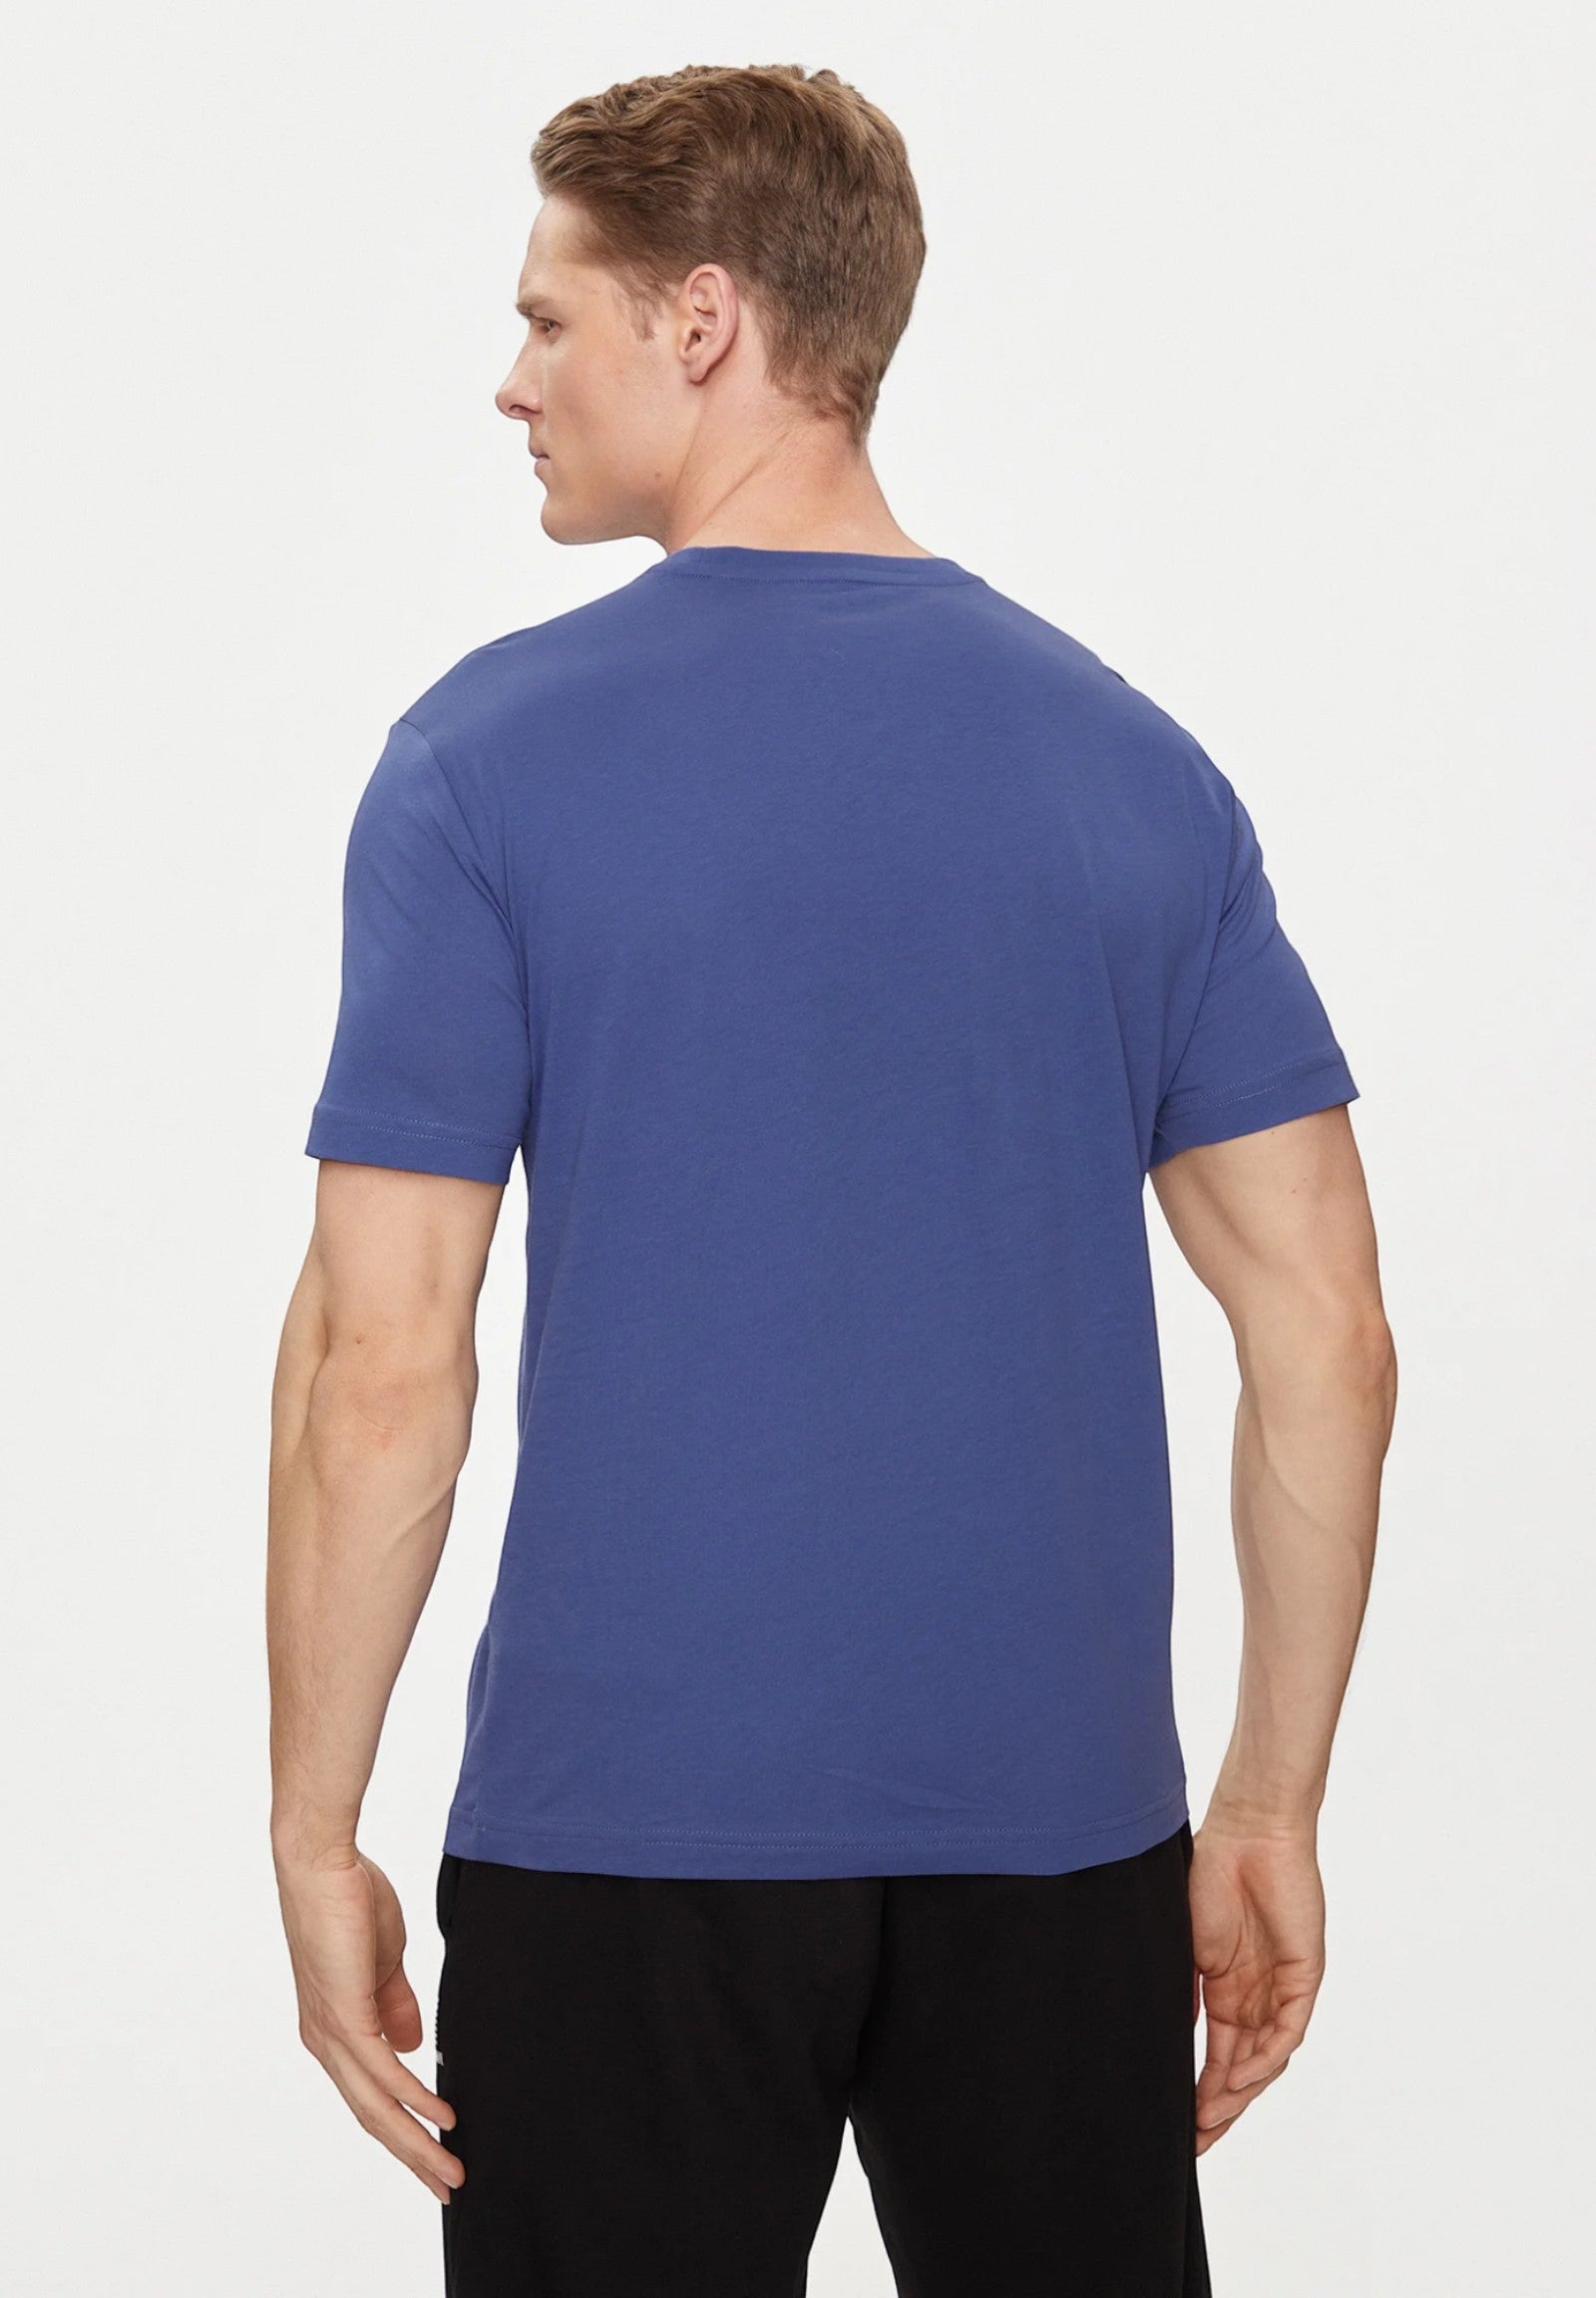 3dpt81 Marlin T-Shirt